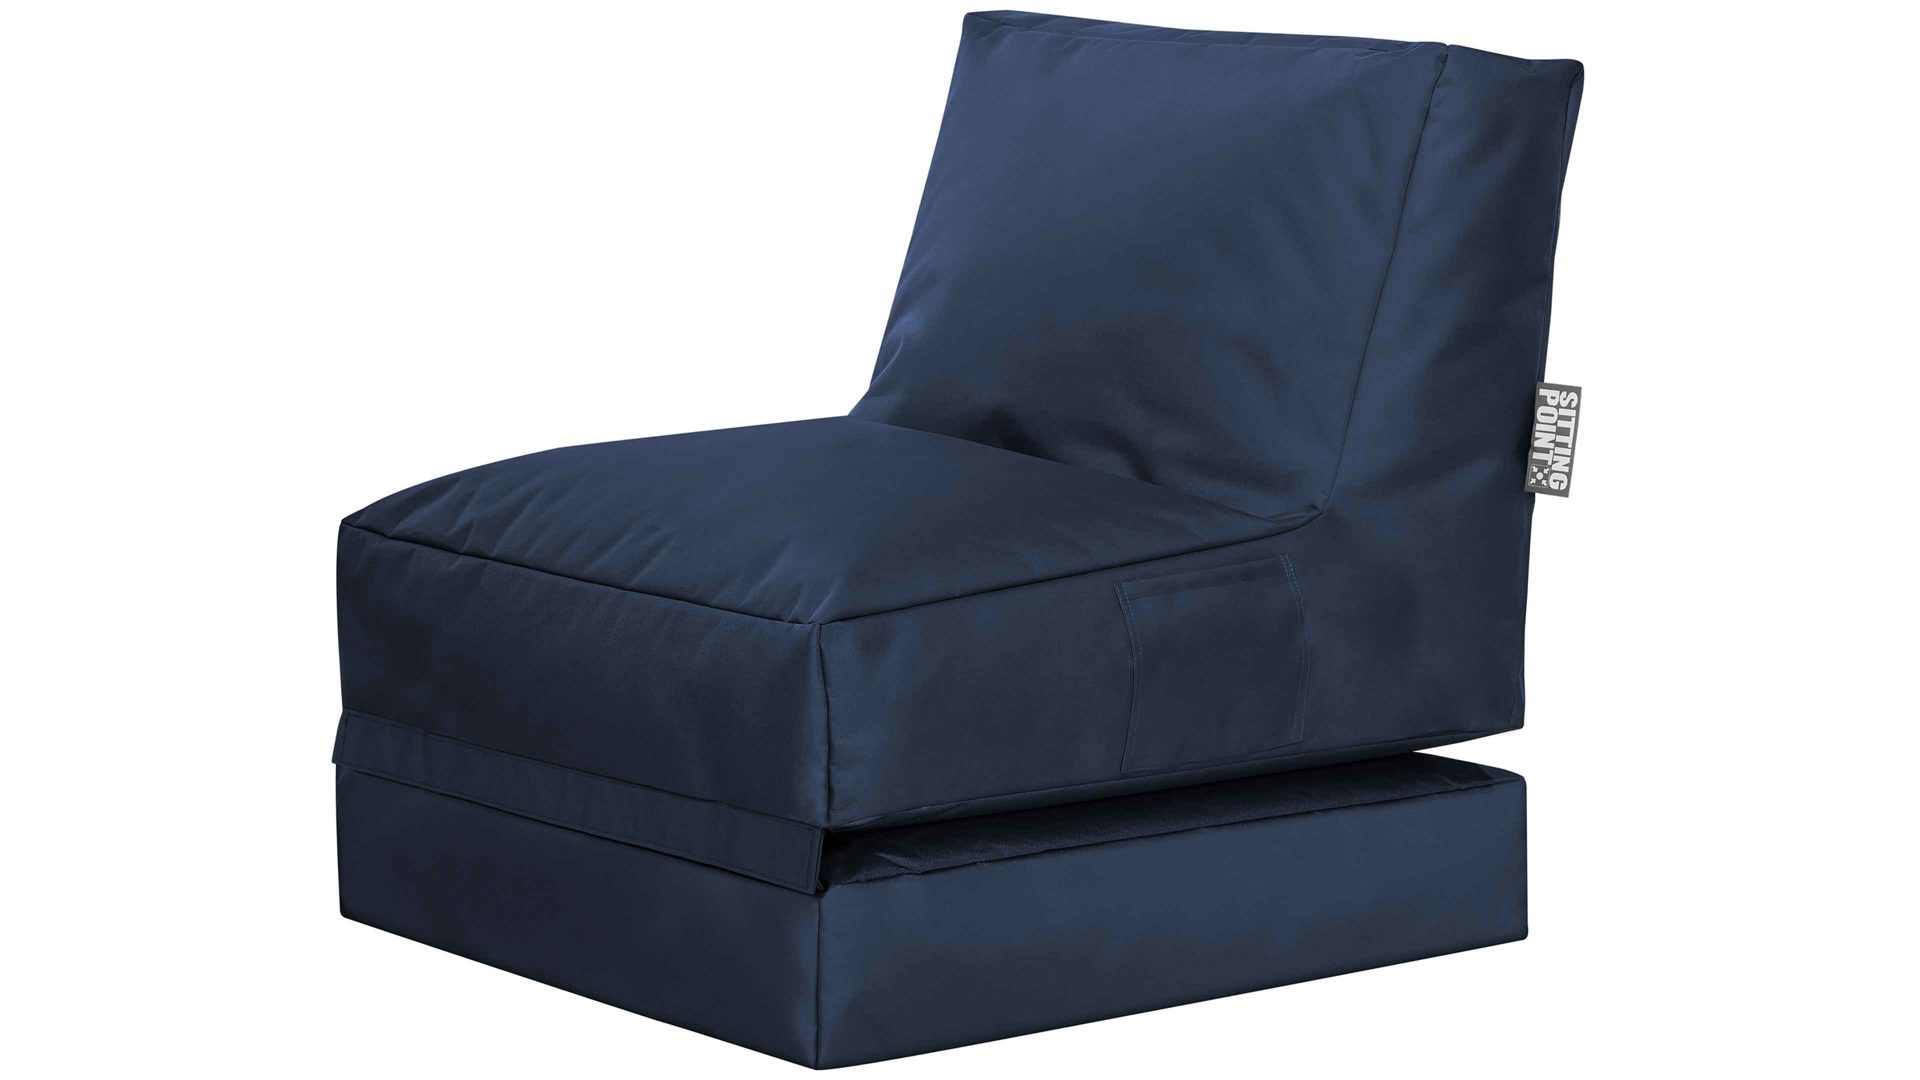 Sitzsack-Liege Magma sitting point aus Kunstfaser in Jeansblau SITTING POINT Funktions-Sitzsack twist scuba® jeansblaue Kunstfaser - ca. 300 Liter